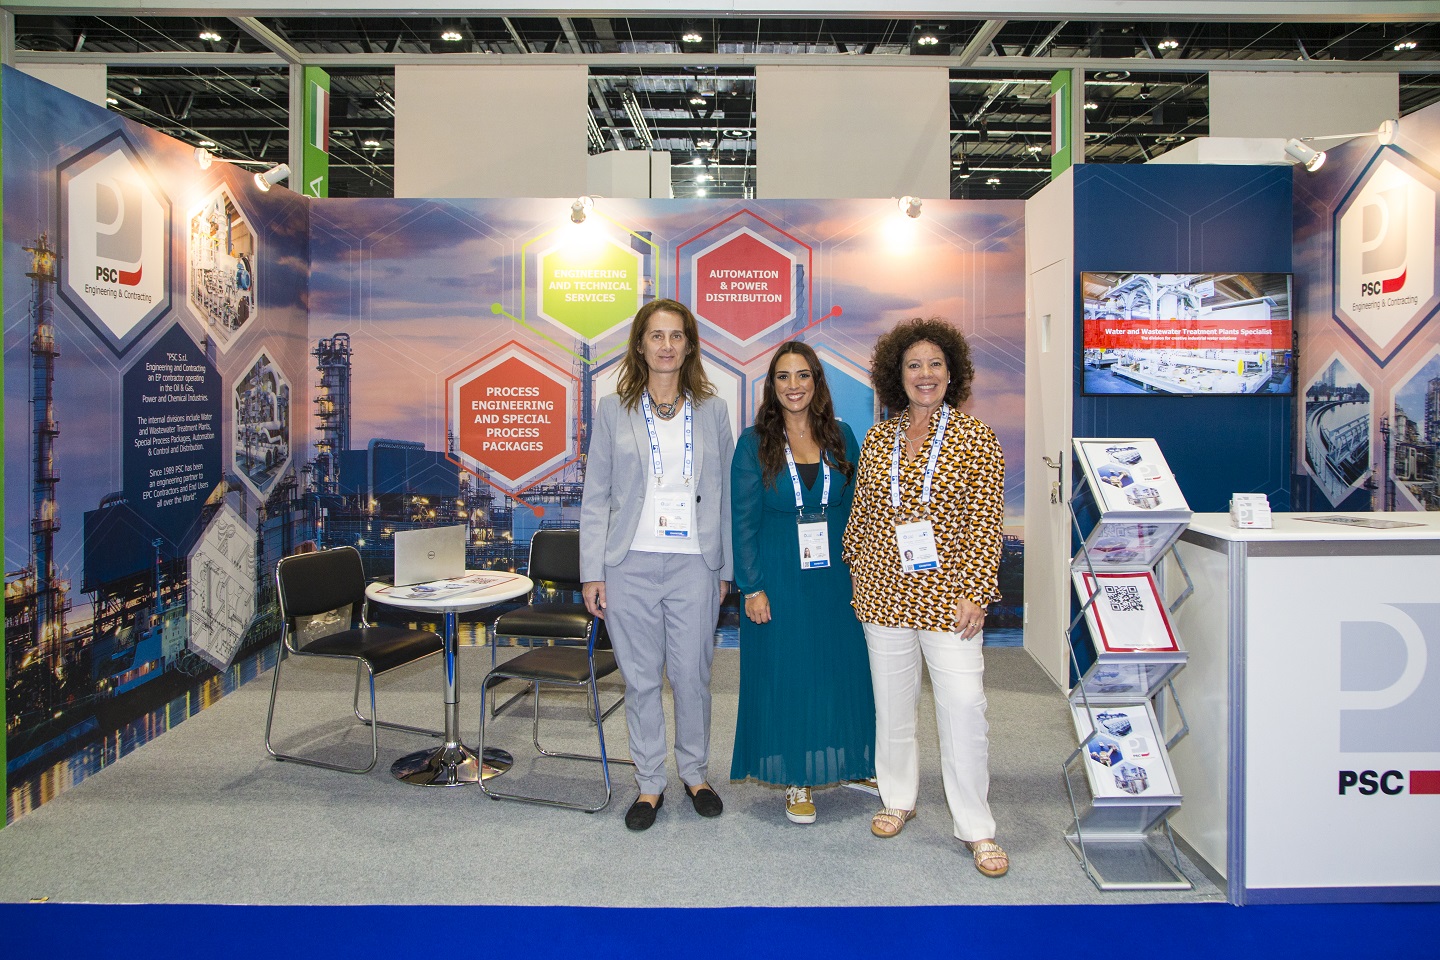 ADIPEC Abu Dhabi, UAE -  International Petroleum Exhibition & Conference